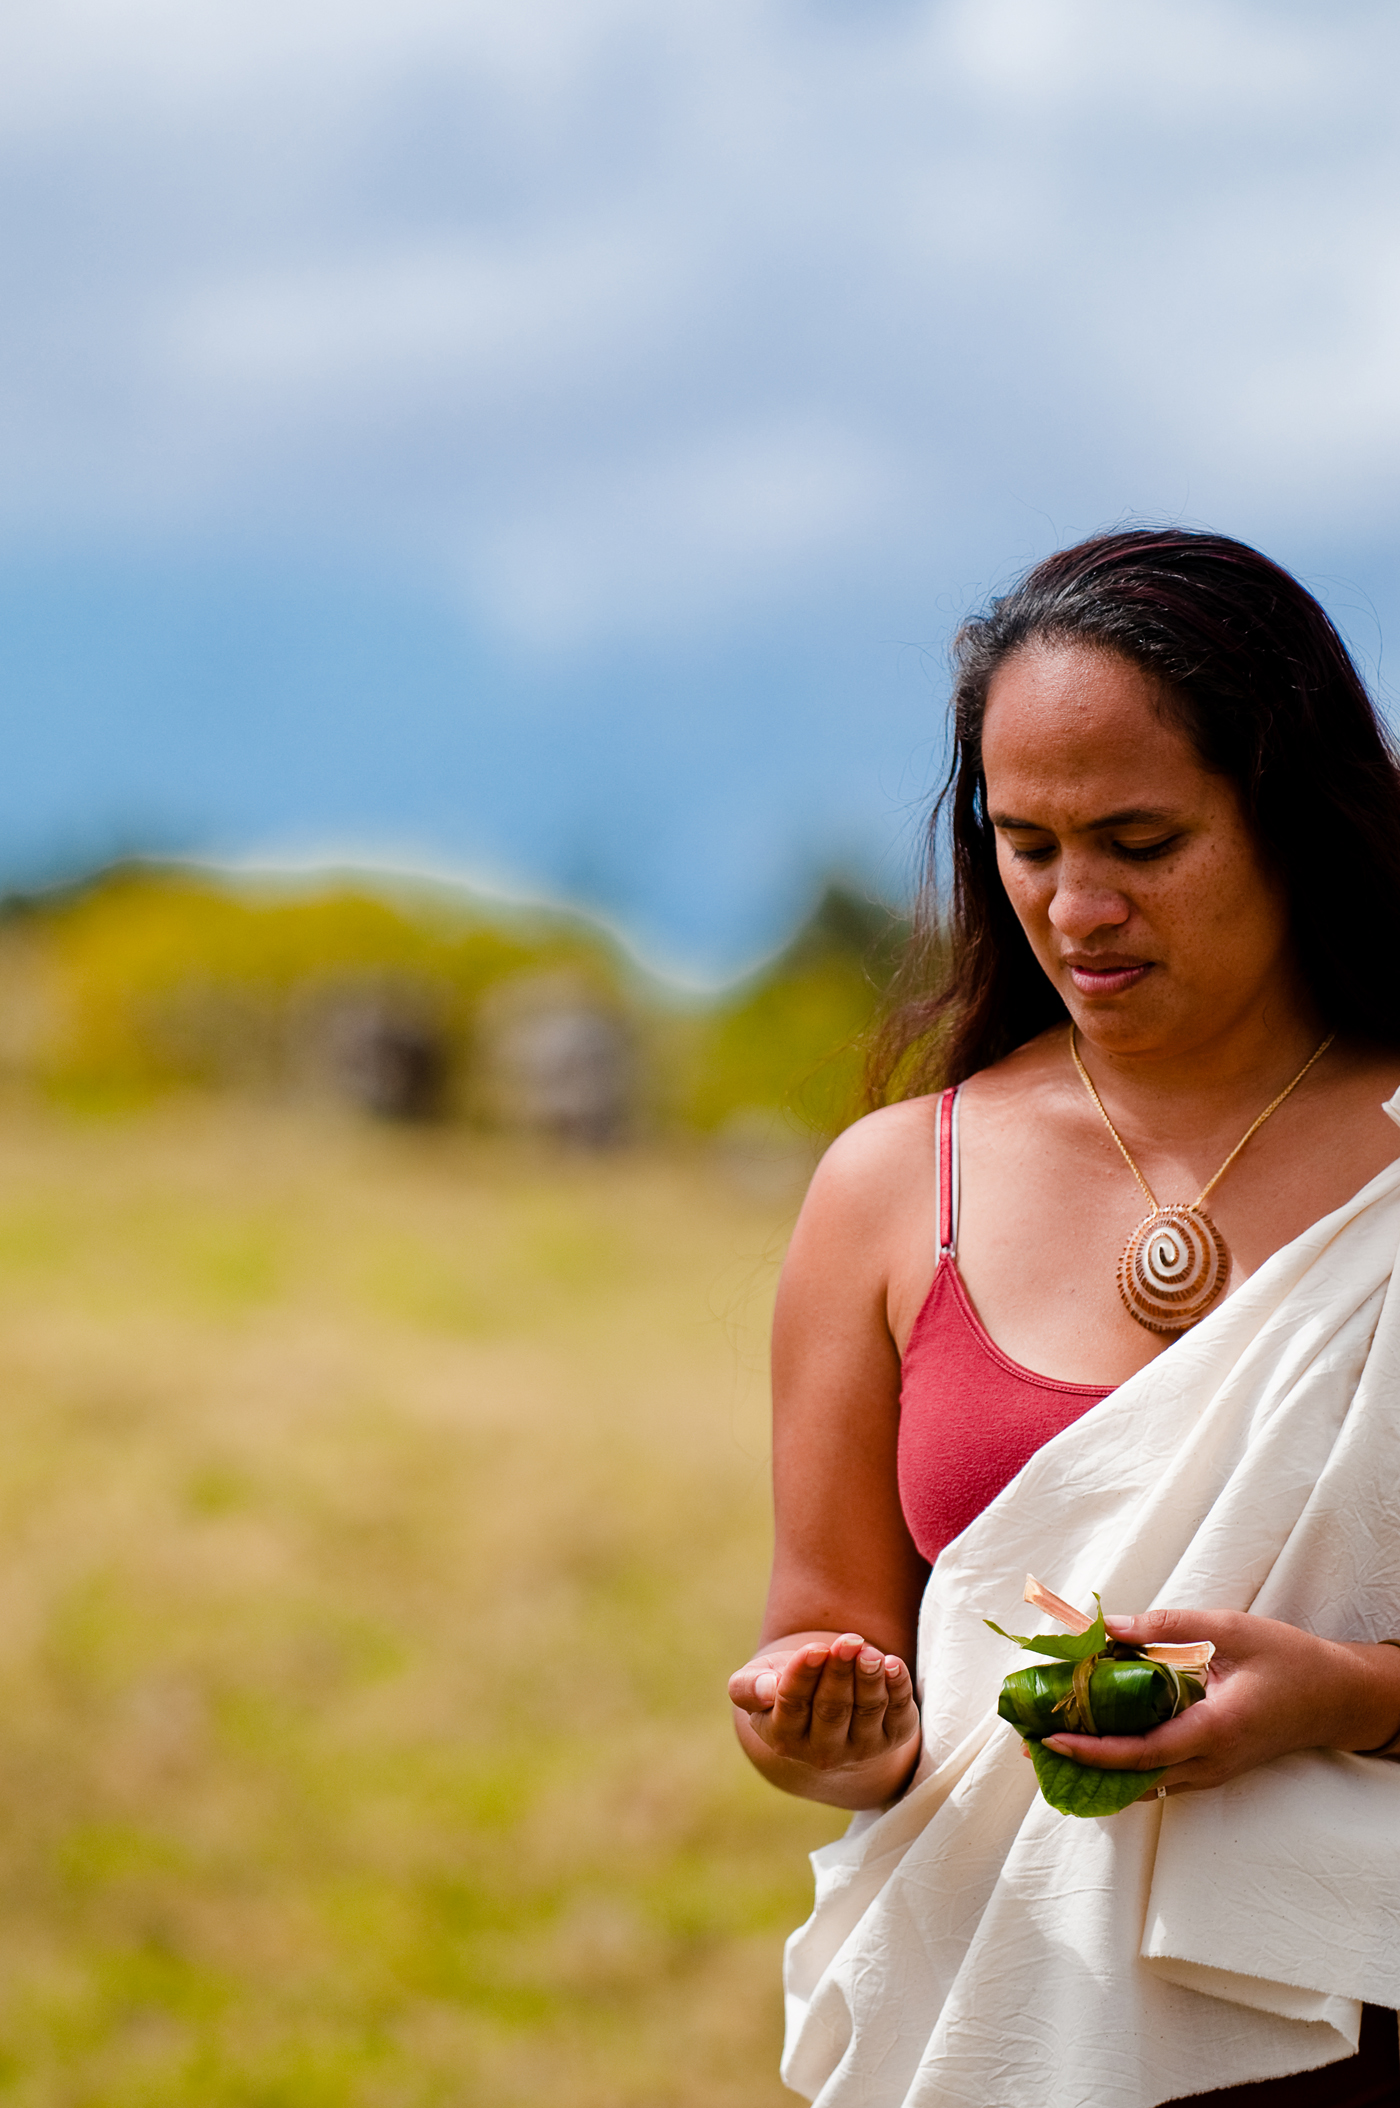 [Woman with hoʻokupu] Photo by Ruben Carillo.